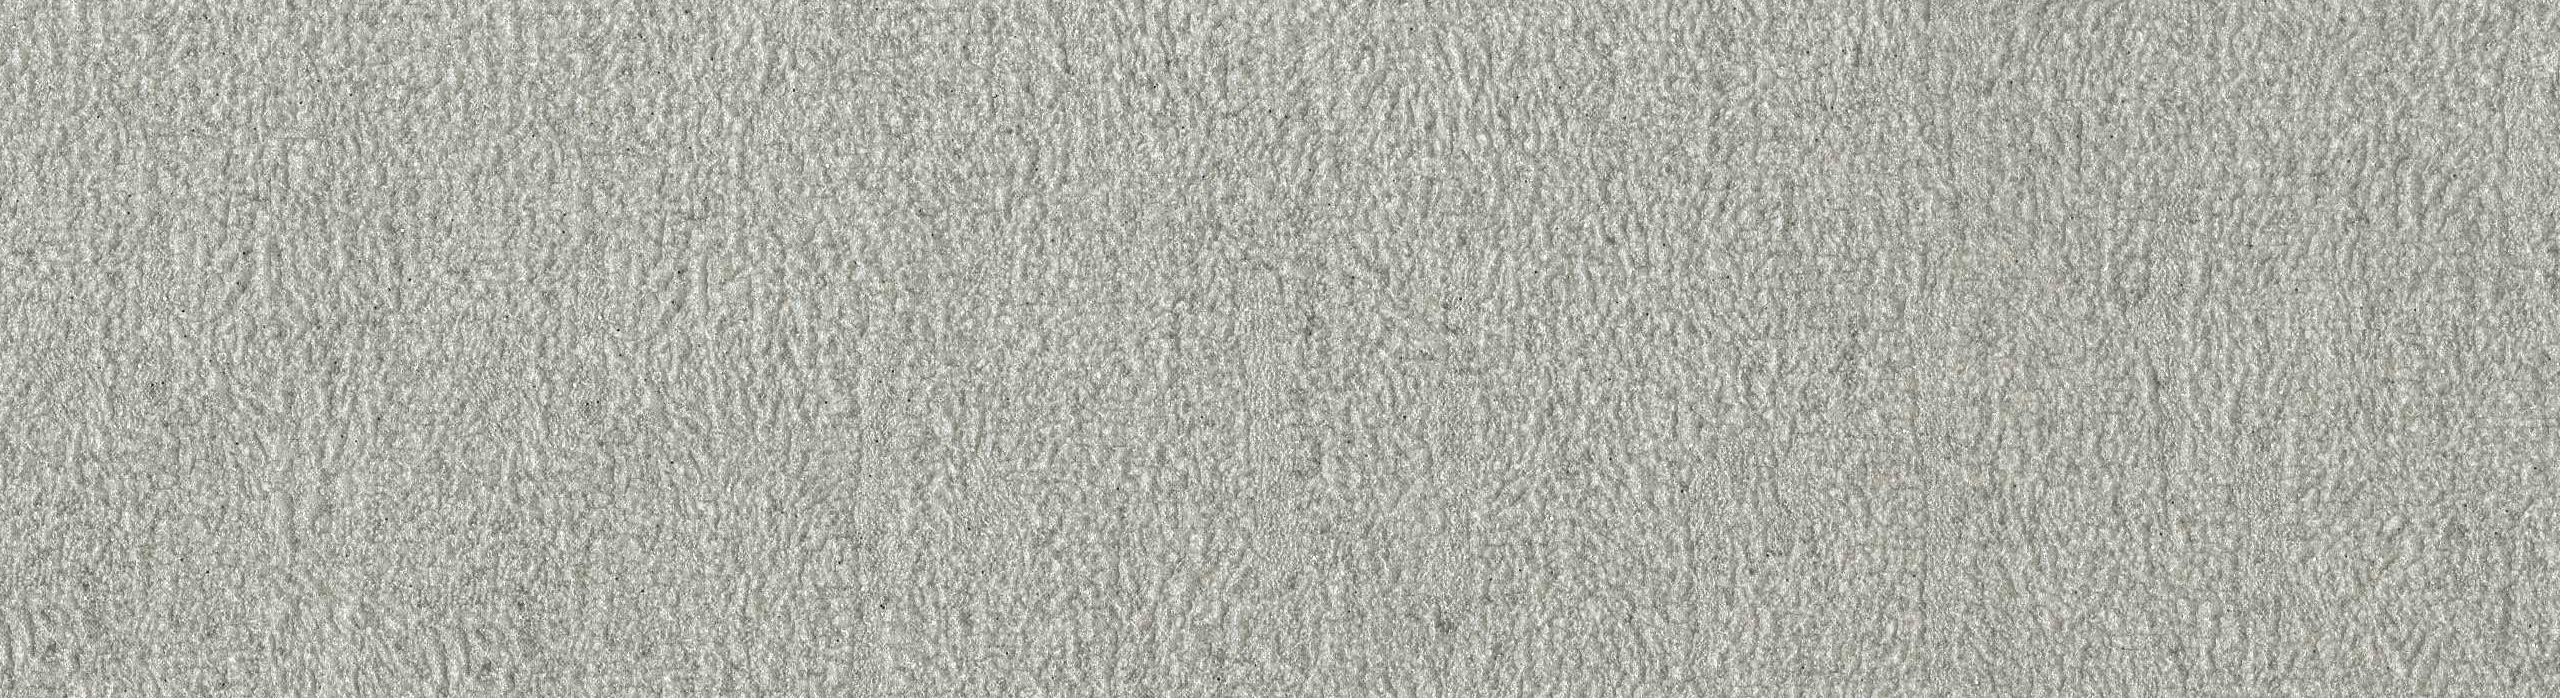 картинка 88294-2 PHOENIX 2018 Обои виниловые на бумажной основе 1.06*15.6 рисунок ткань цвет серый